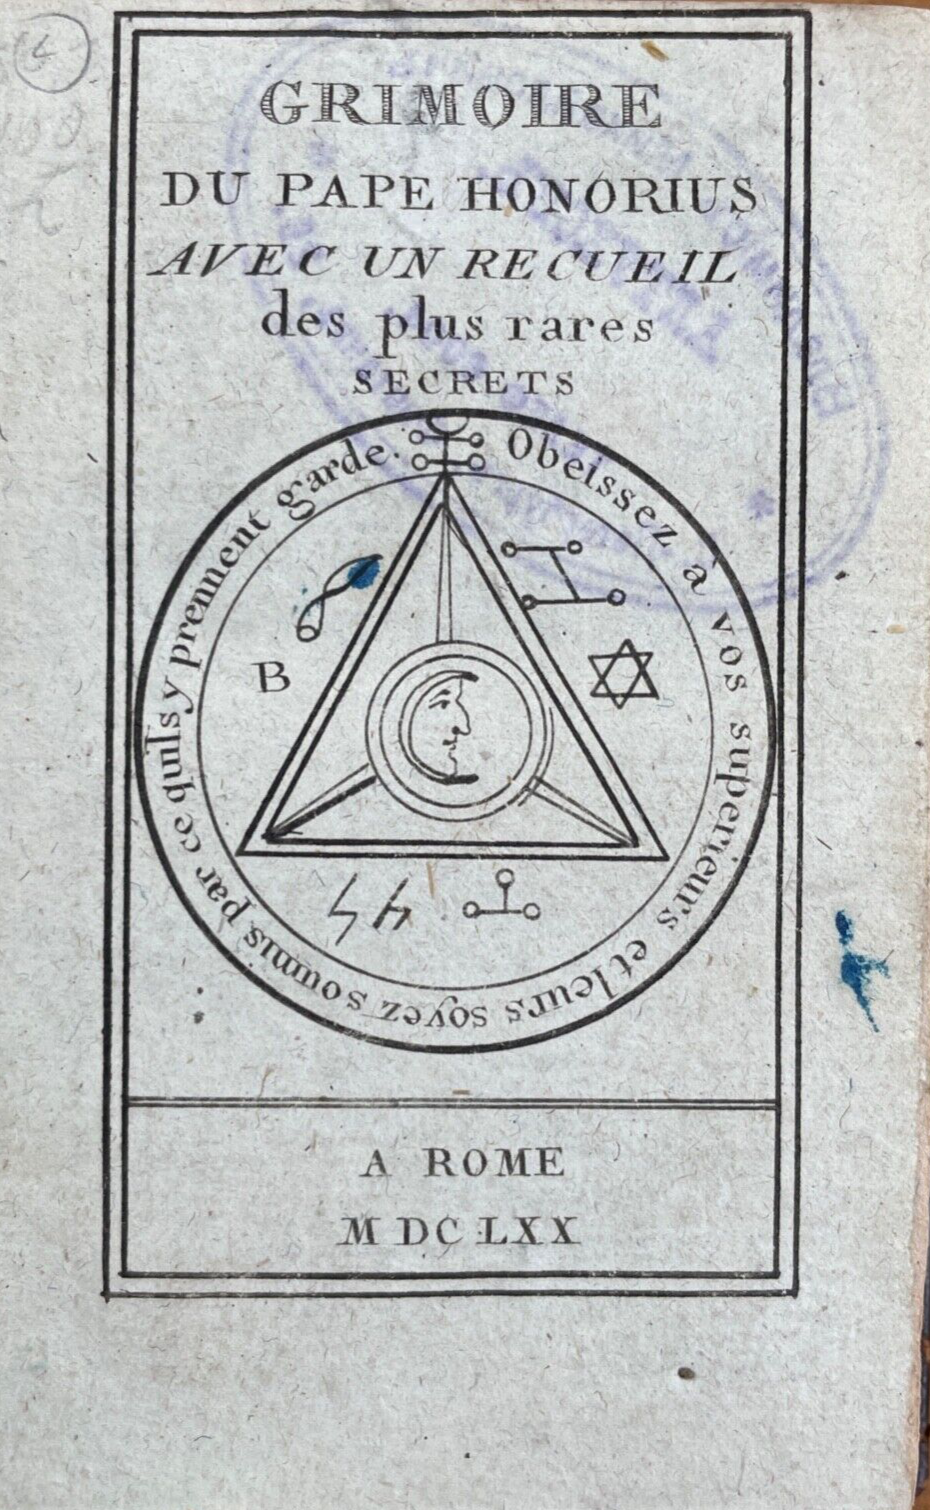 1670 GRIMOIRE DU PAPE HONORIUS - WITCHCRAFT, SORCERY, 1st BLACK MAGICK GRIMOIRE